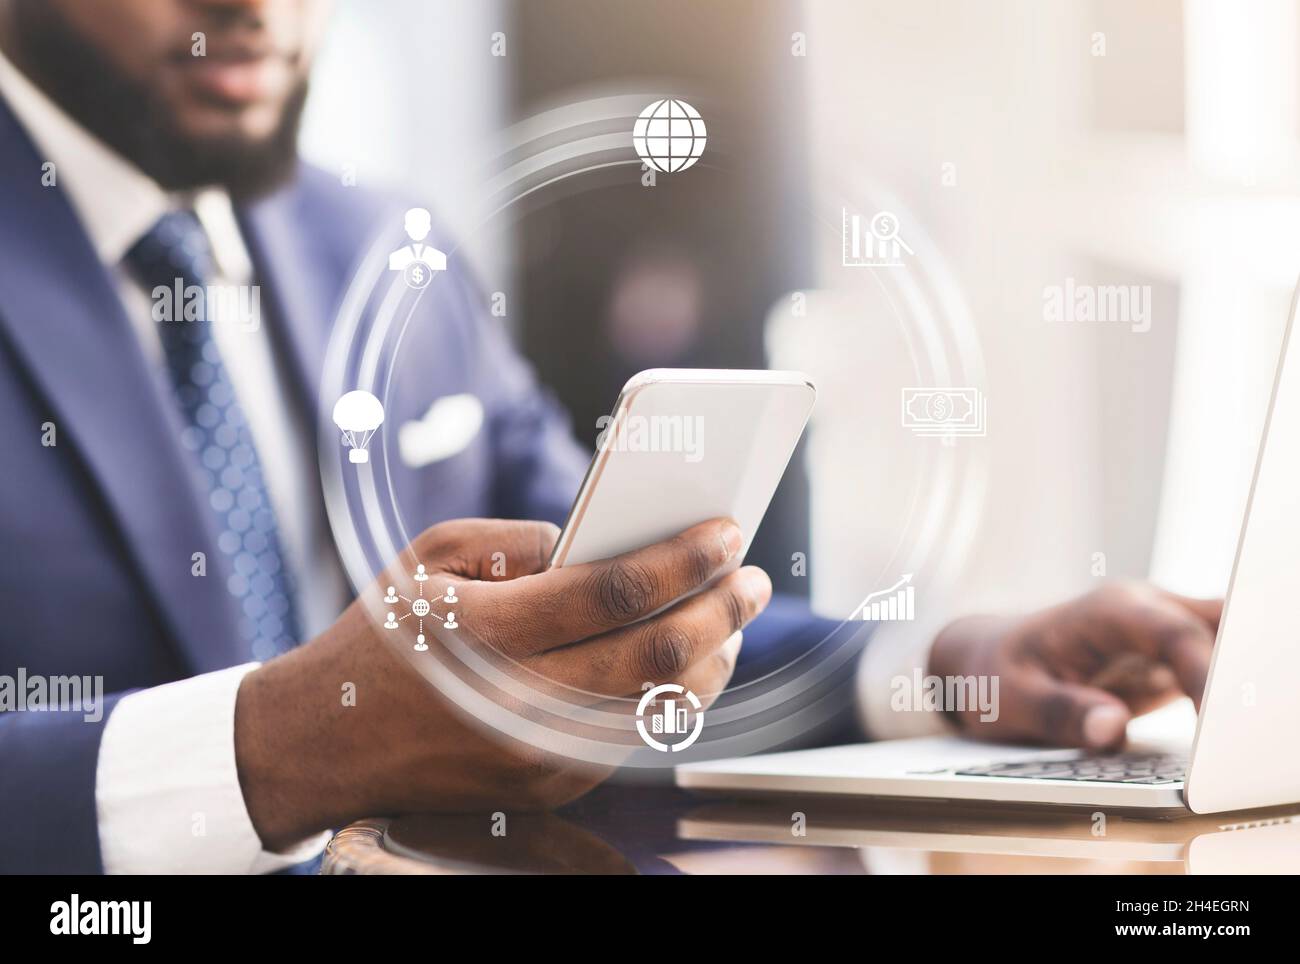 Jeune homme noir travaillant au bureau avec un ordinateur portable et un smartphone, collage avec icônes abstraites sur le lieu de travail Banque D'Images